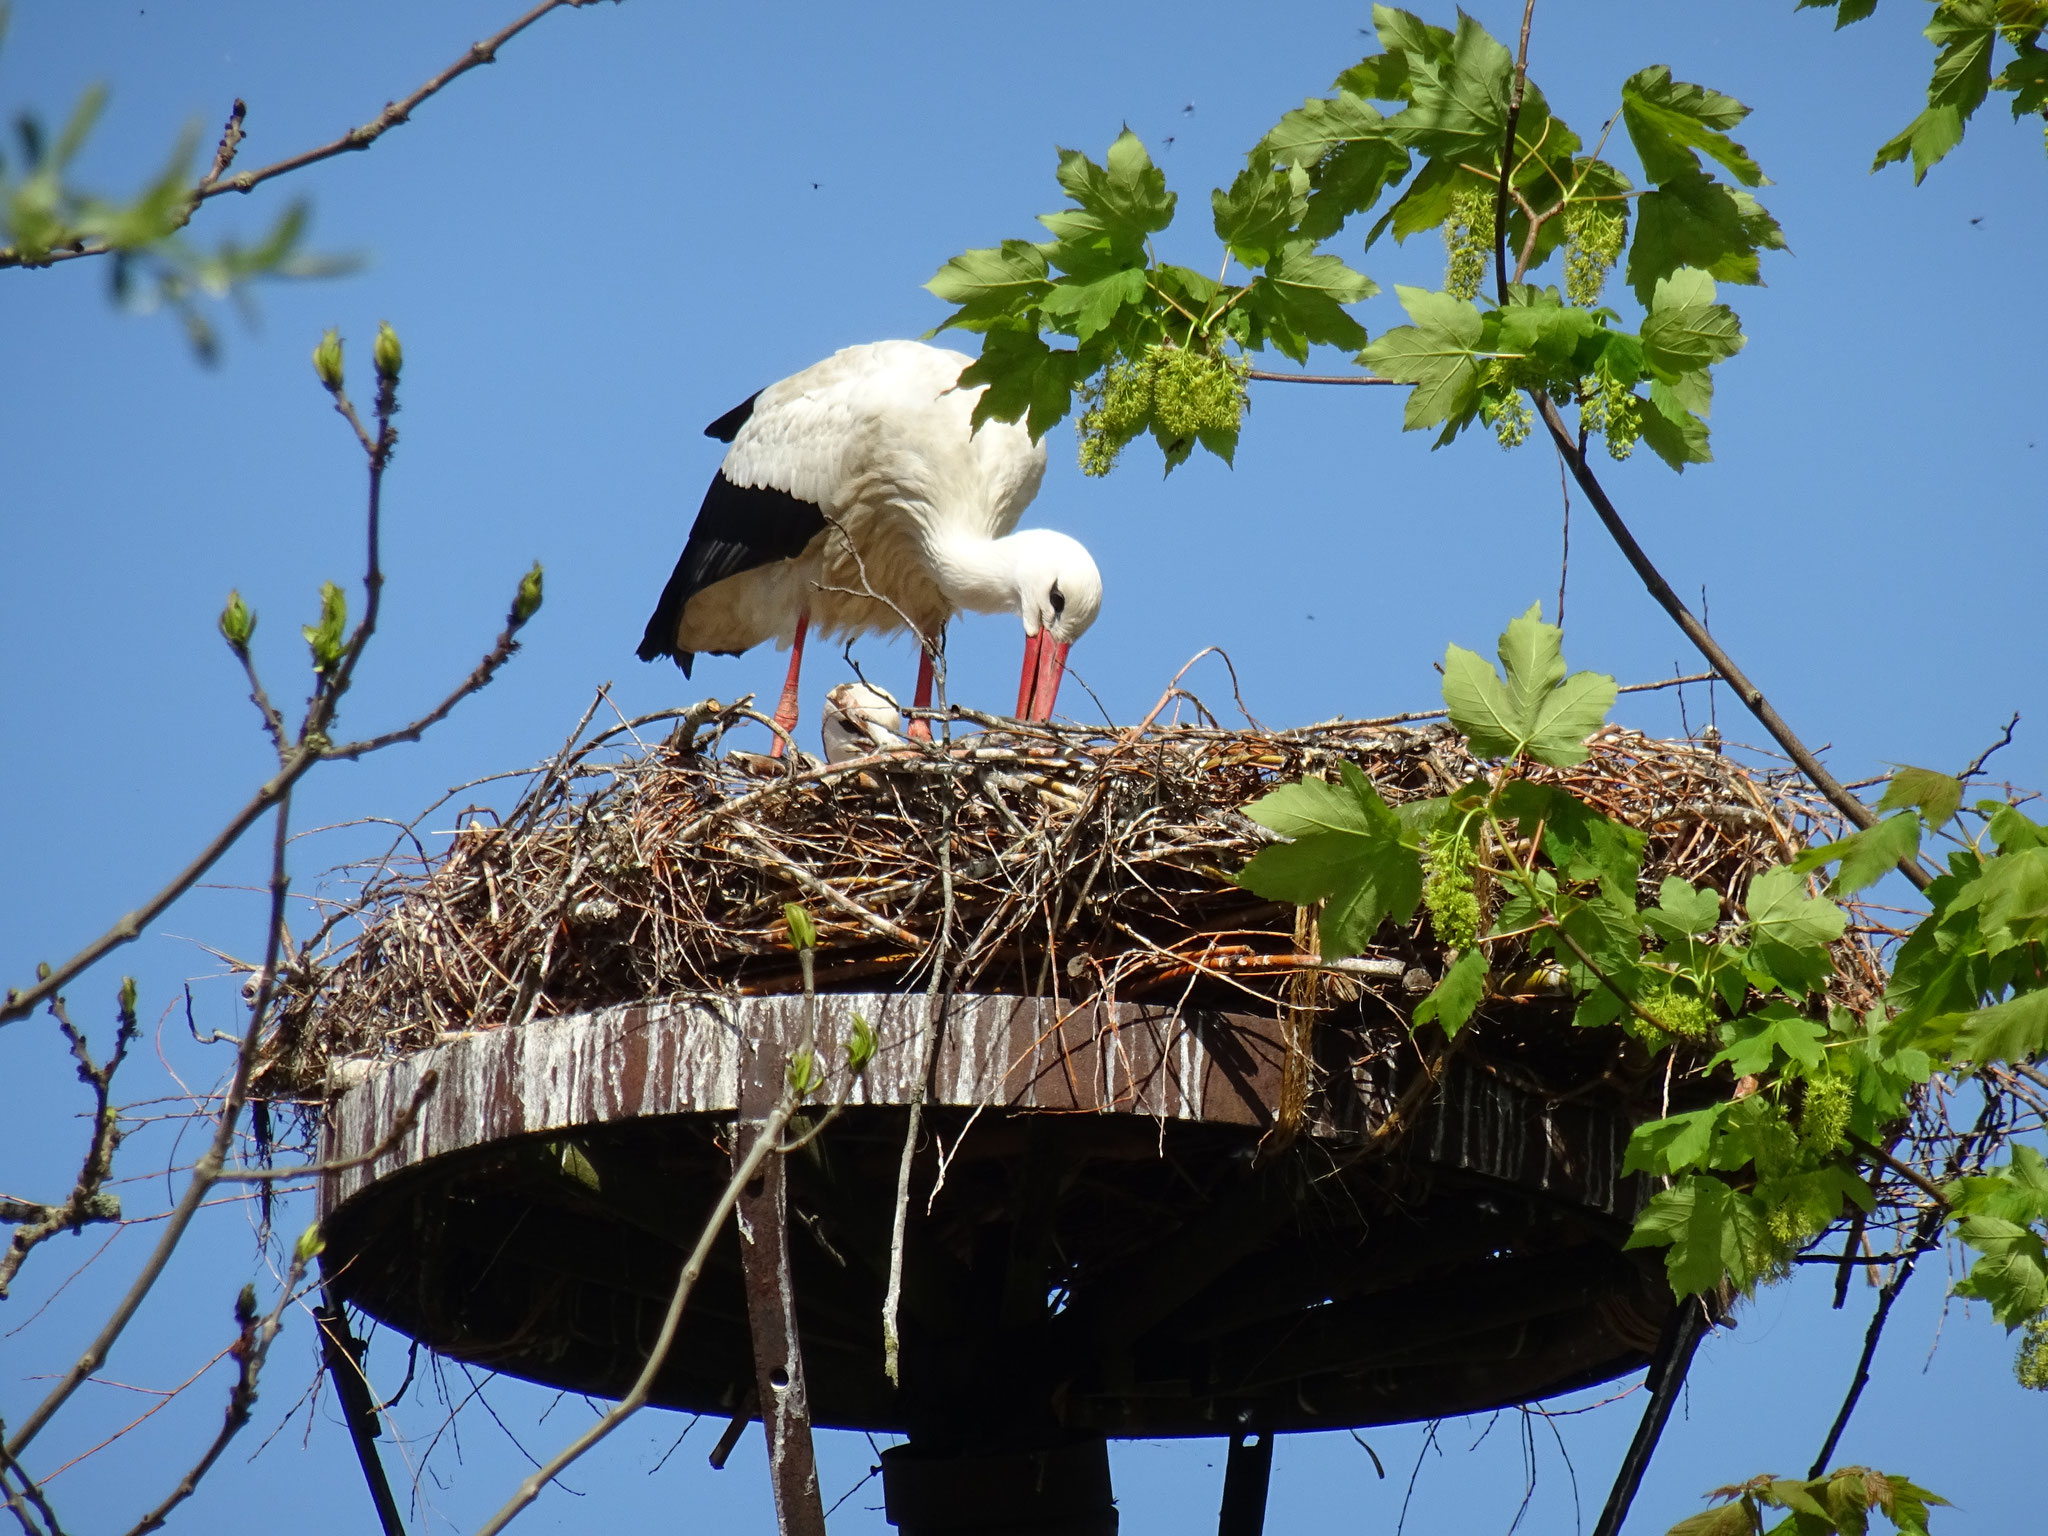 5. April 2020. Am 5. April ist das Storchenpaar das erste mal auf dem Nest zu sehen. Das Nest wurde mithilfe der Freiwilligen Feuerwehr aufgestellt und von den Störchen direkt angenommen. Es scheint Bedarf da zu sein...